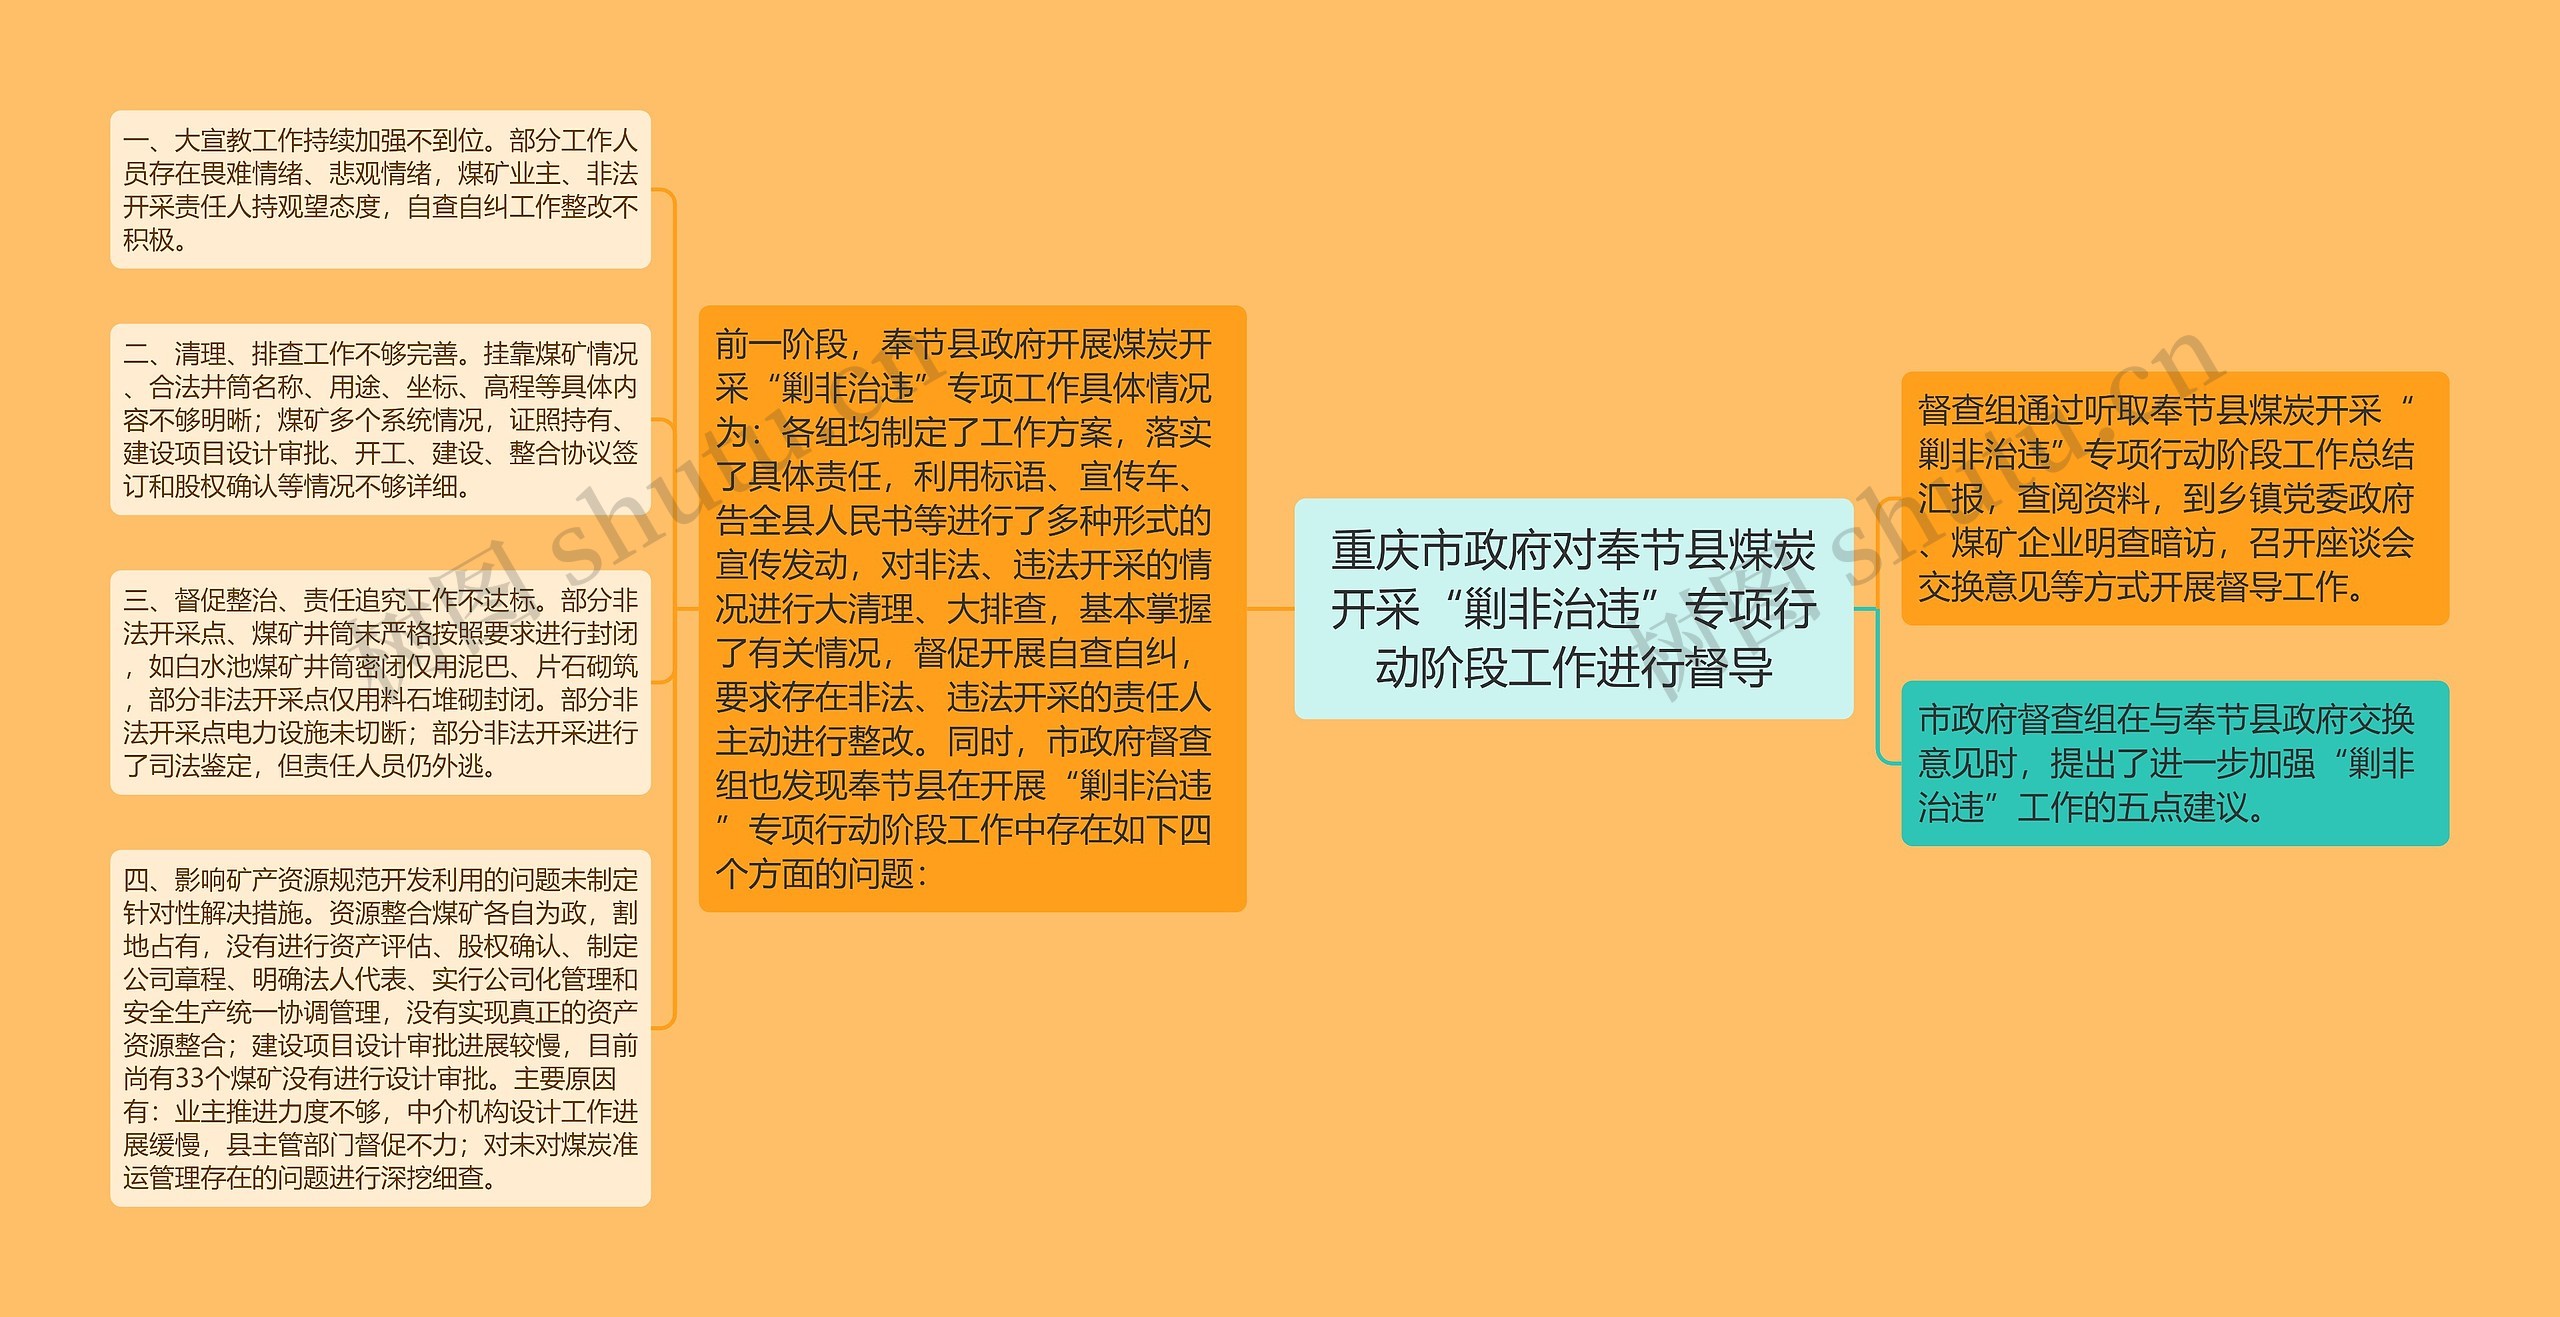 重庆市政府对奉节县煤炭开采“剿非治违”专项行动阶段工作进行督导